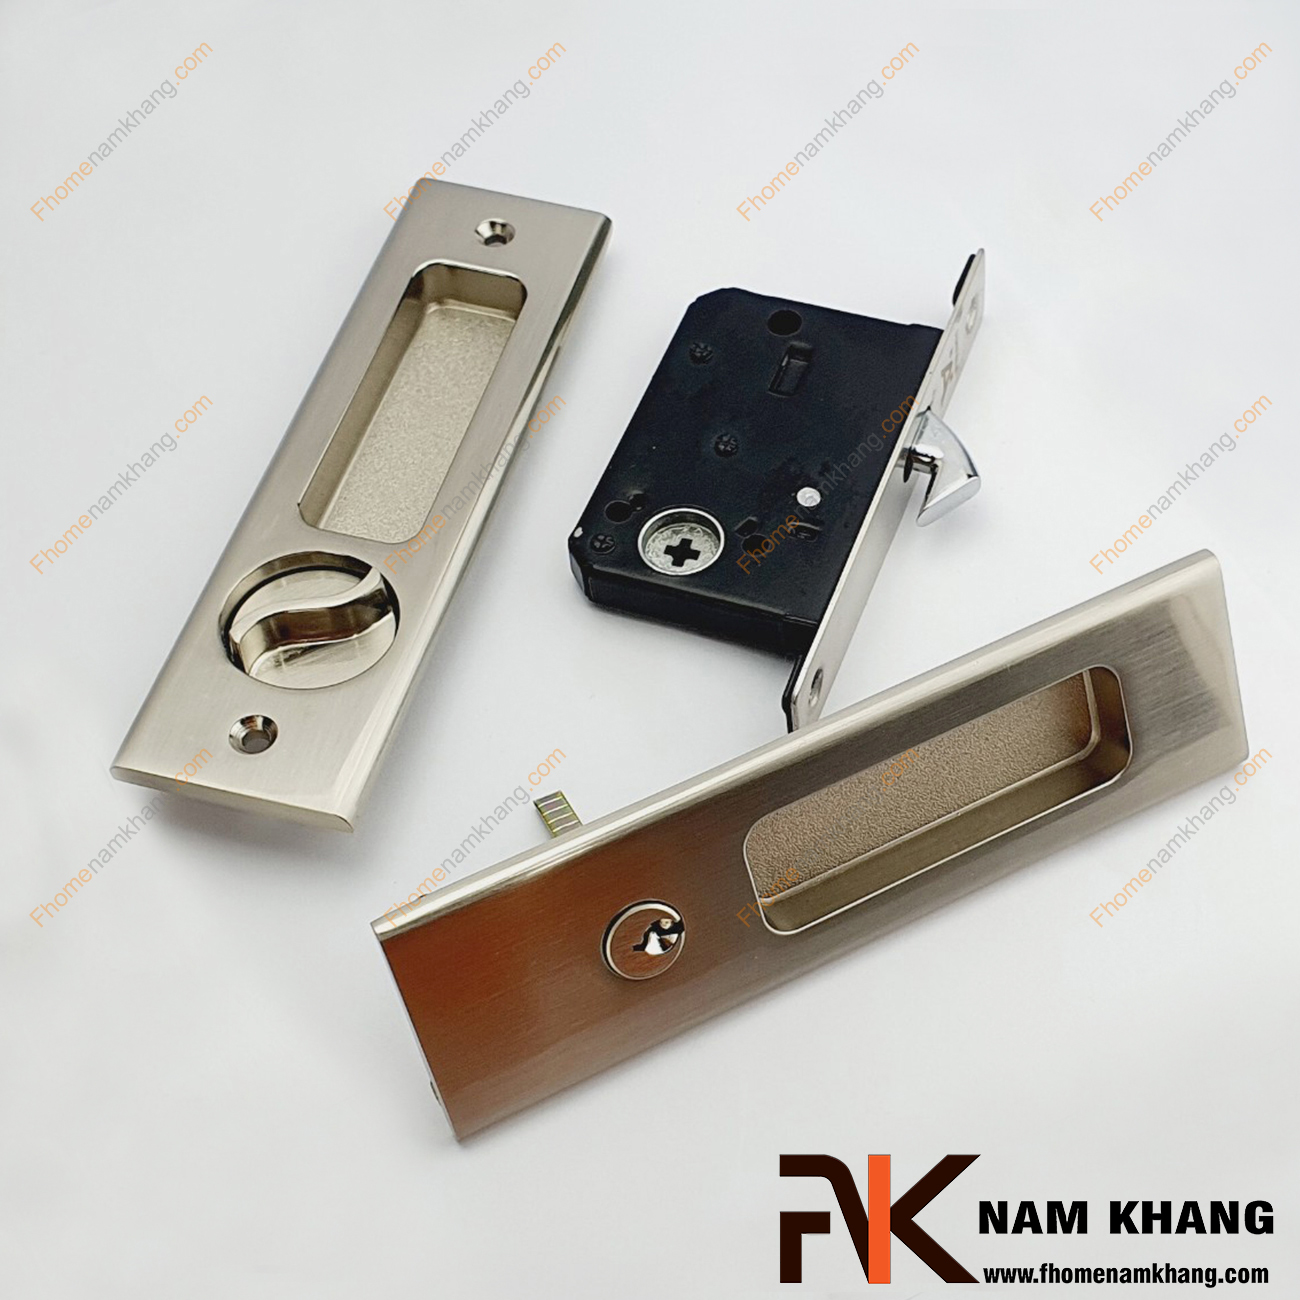 Khóa âm cửa lùa dạng vuông màu inox xước NK568V-INOX là sản phẩm khóa thông dụng và được ưa chuộng sử dụng tại thị trường Việt Nam.